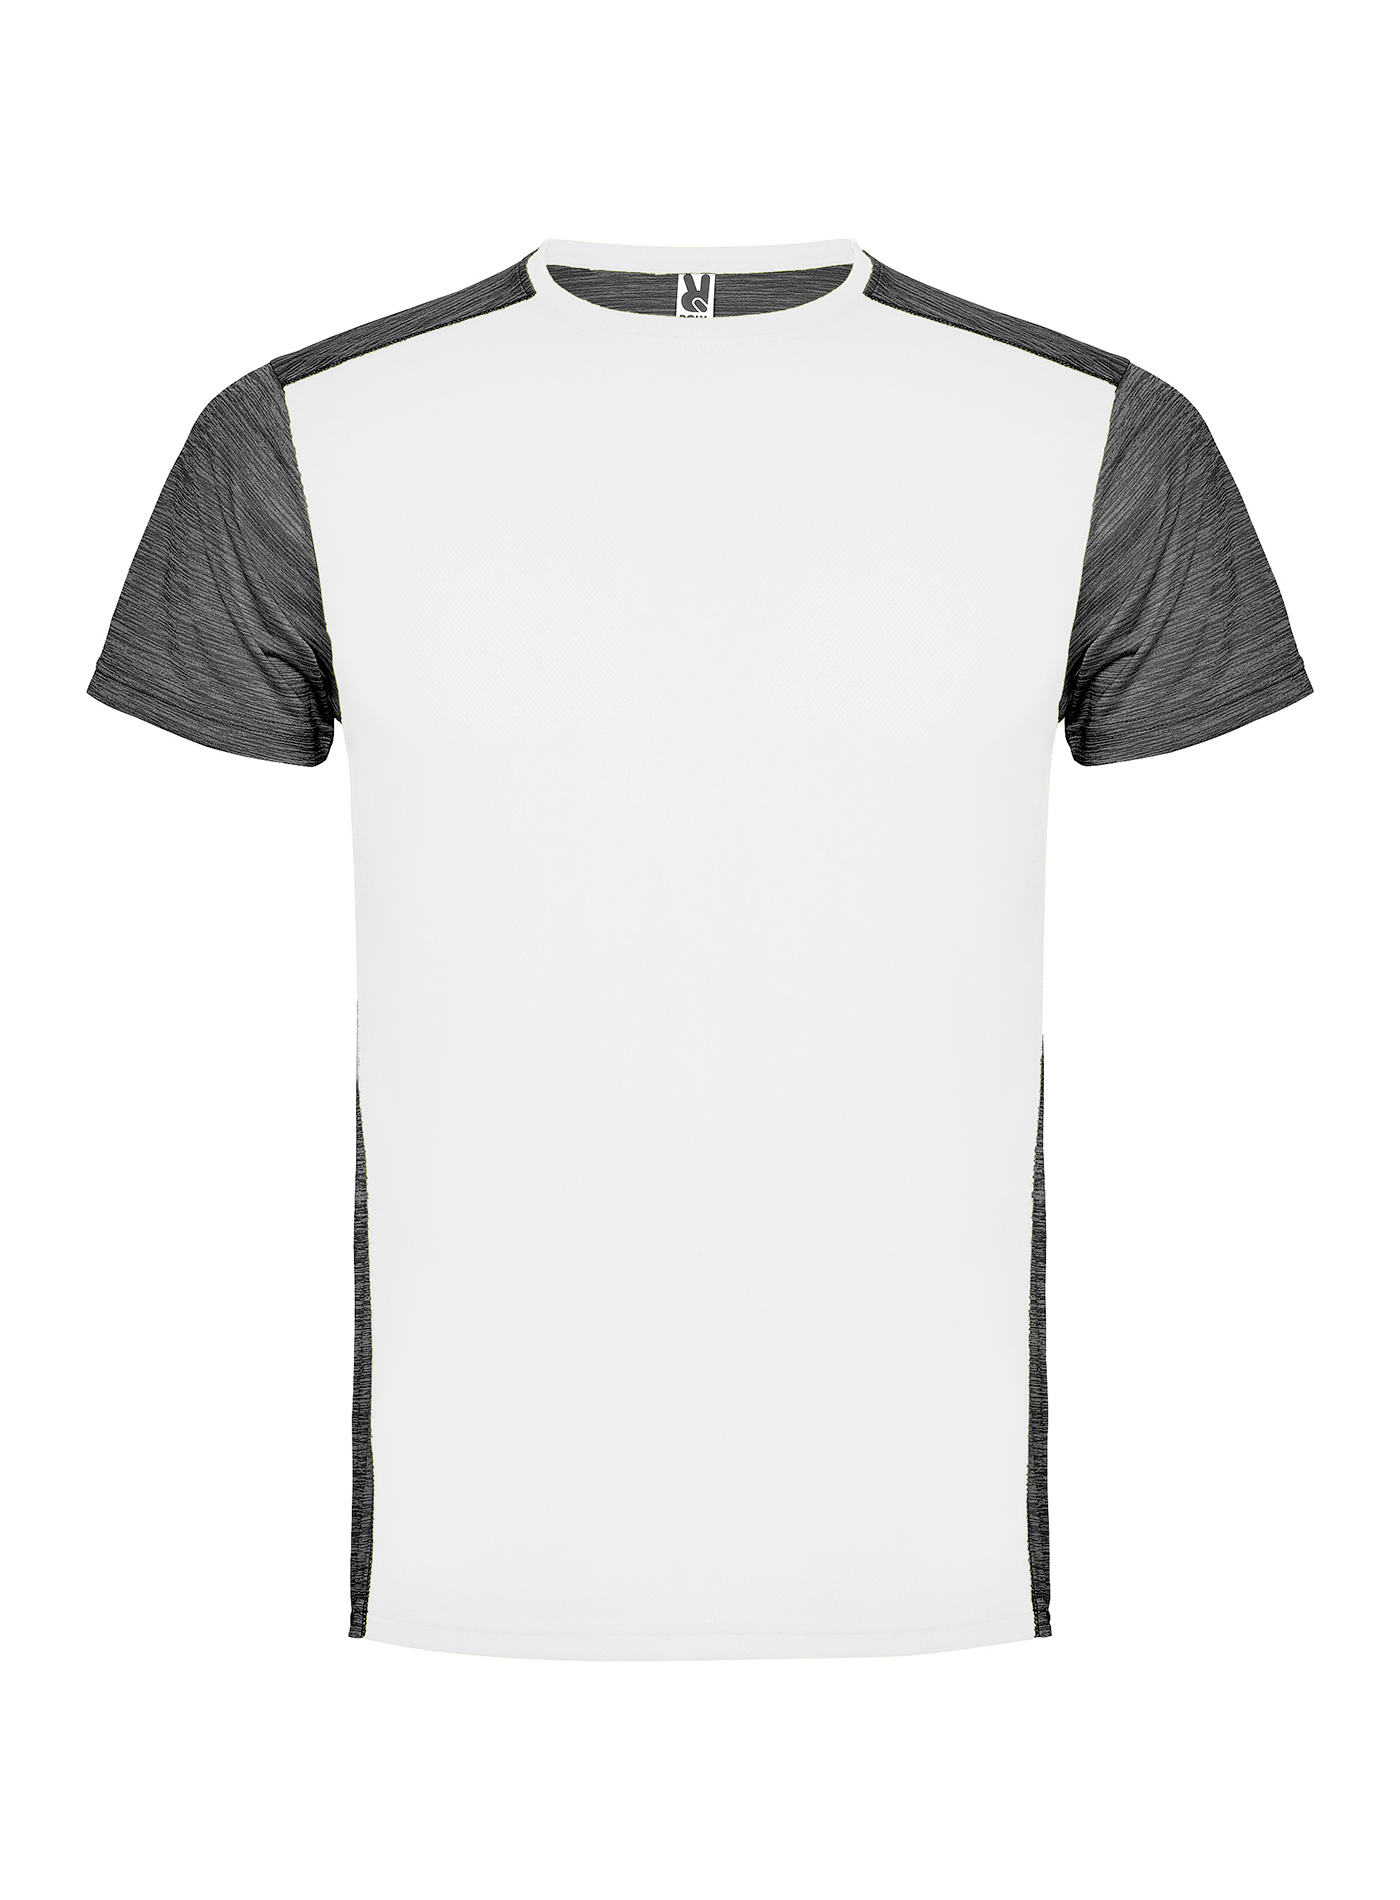 Pánské/Dětské sportovní tričko Roly Zolder - Bílá a tmavě šedý melír S